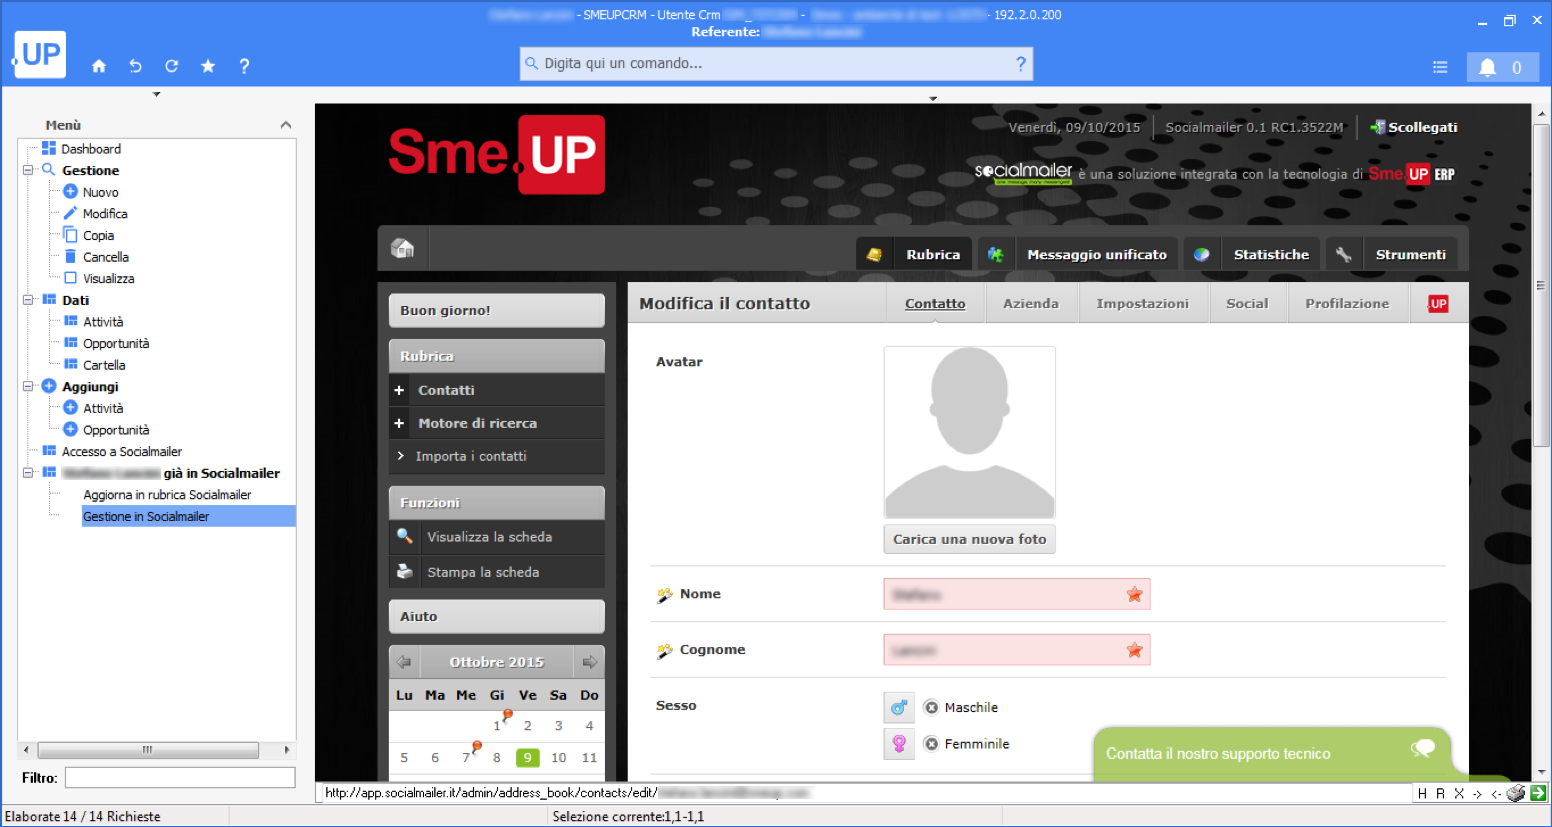 Sme.UP e Socialmailer - Creazione contatti